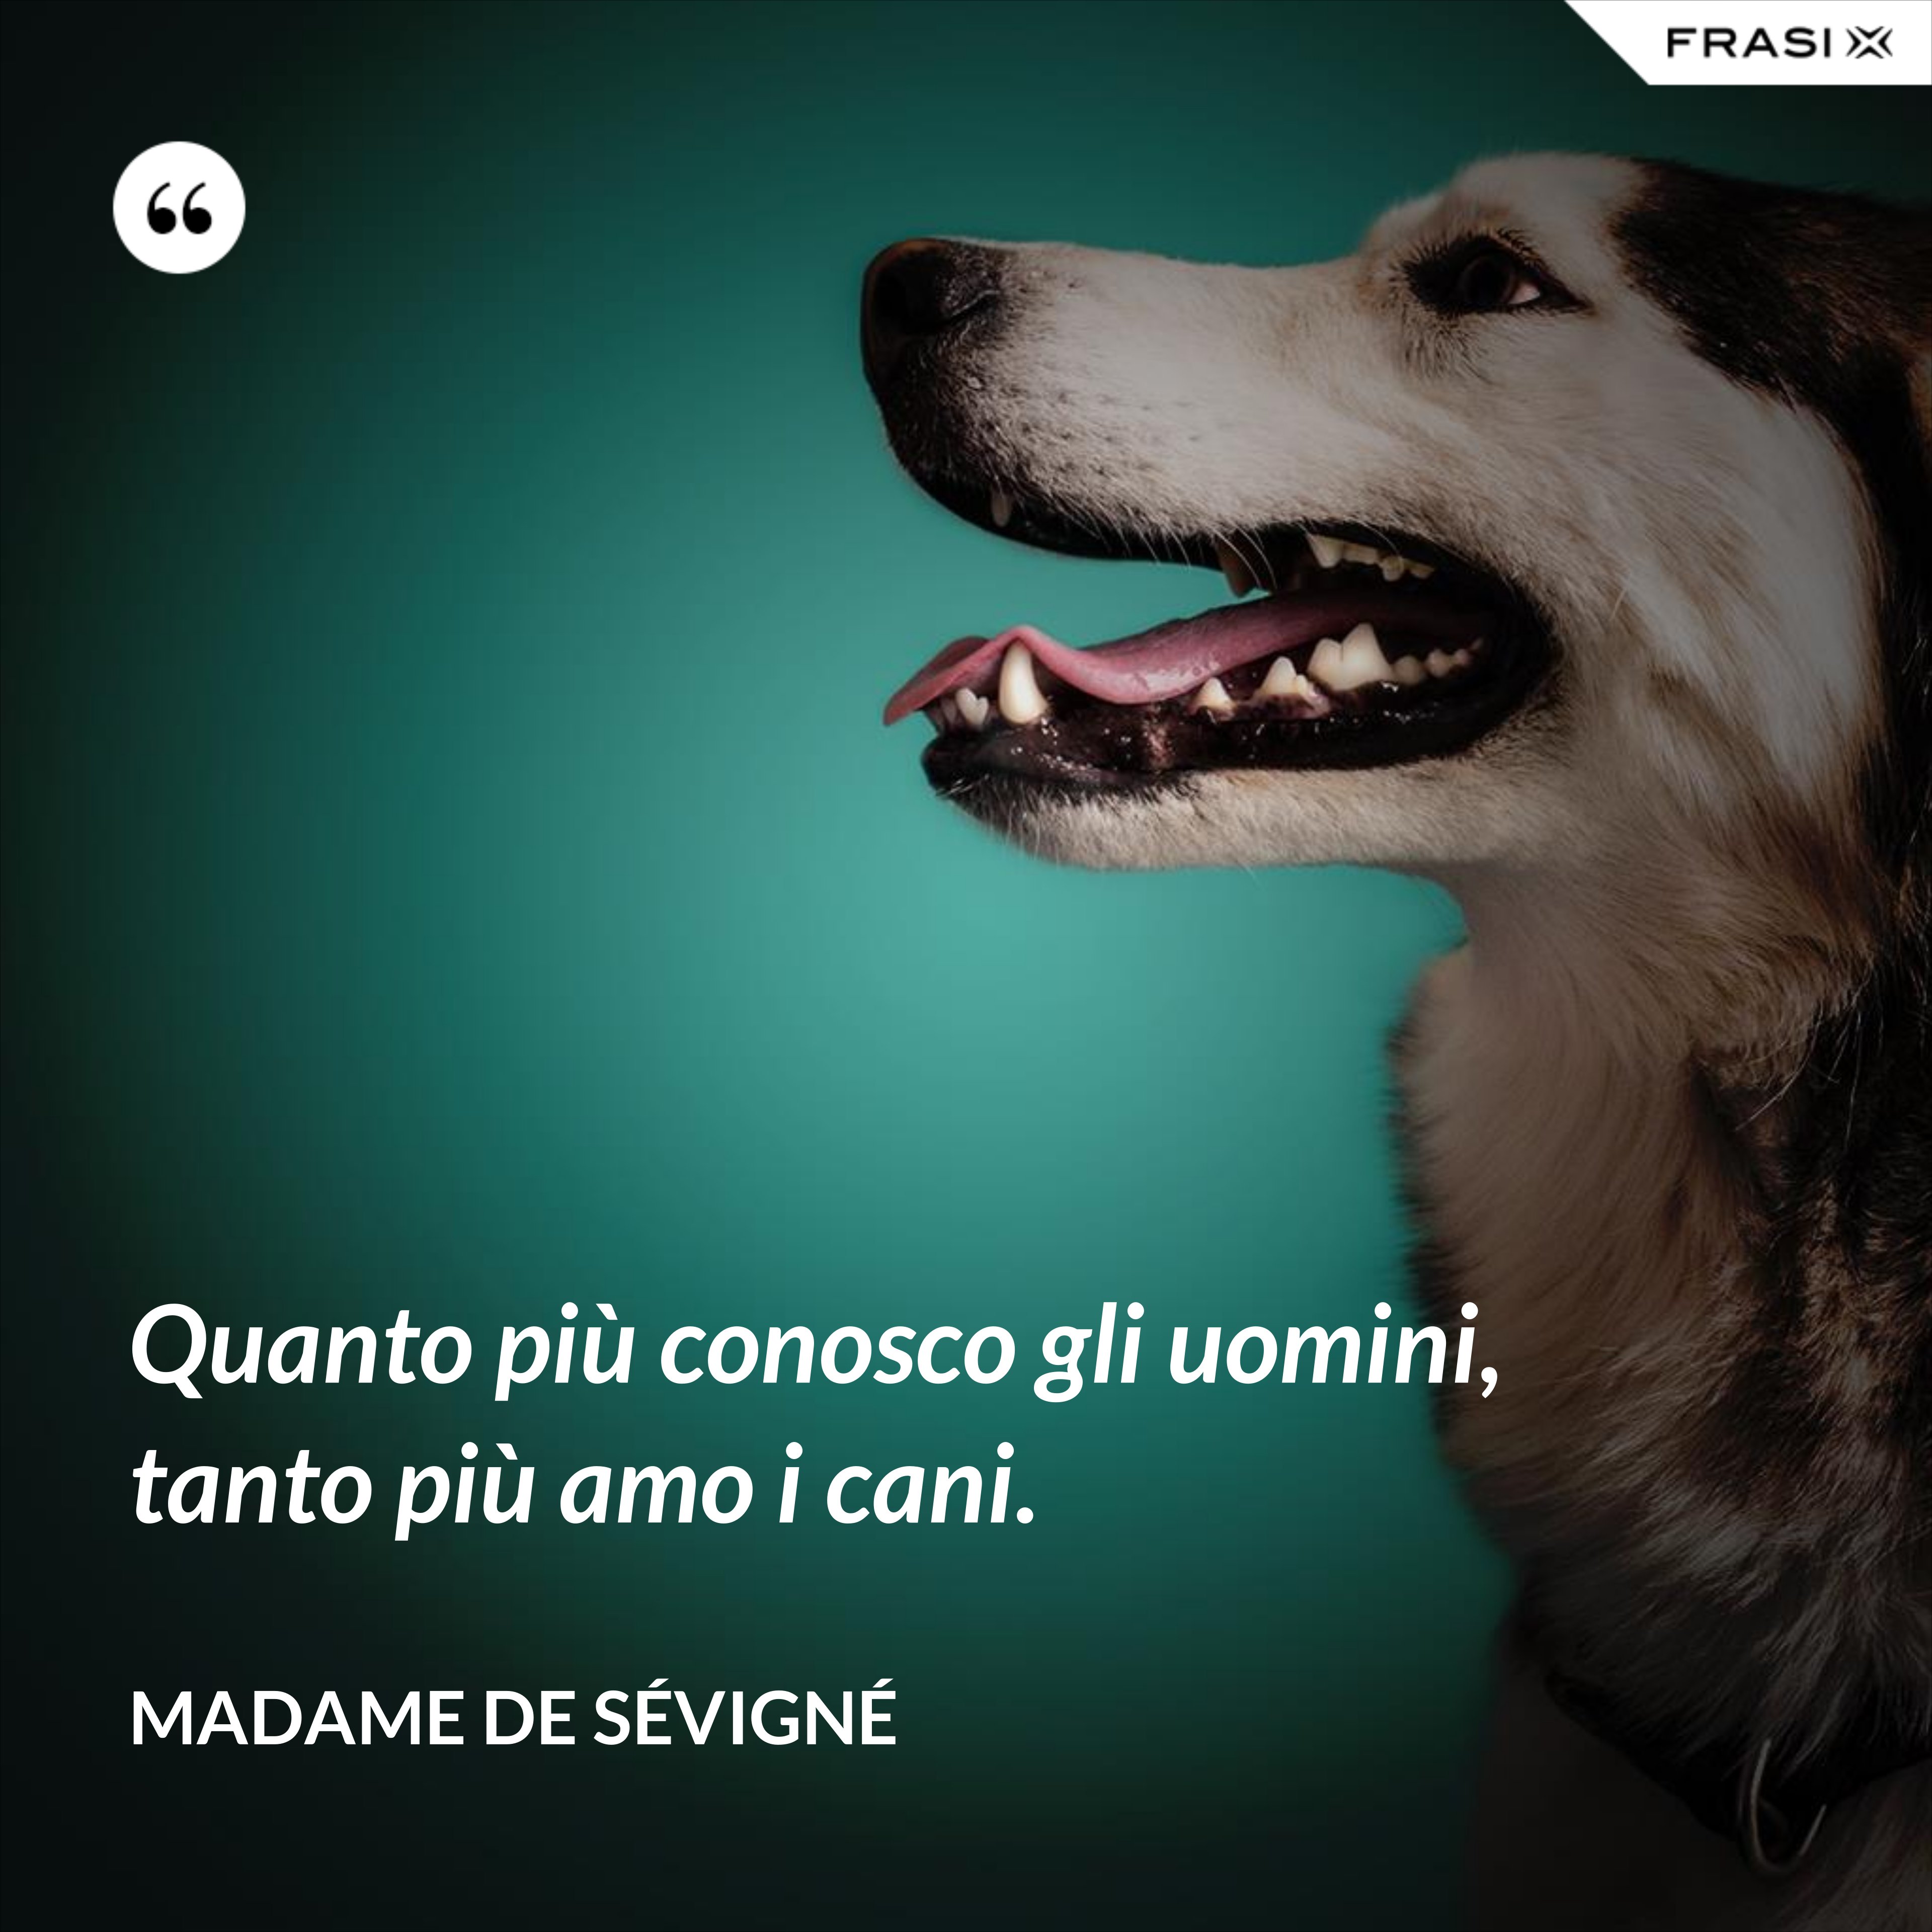 Quanto più conosco gli uomini, tanto più amo i cani. - Madame de Sévigné